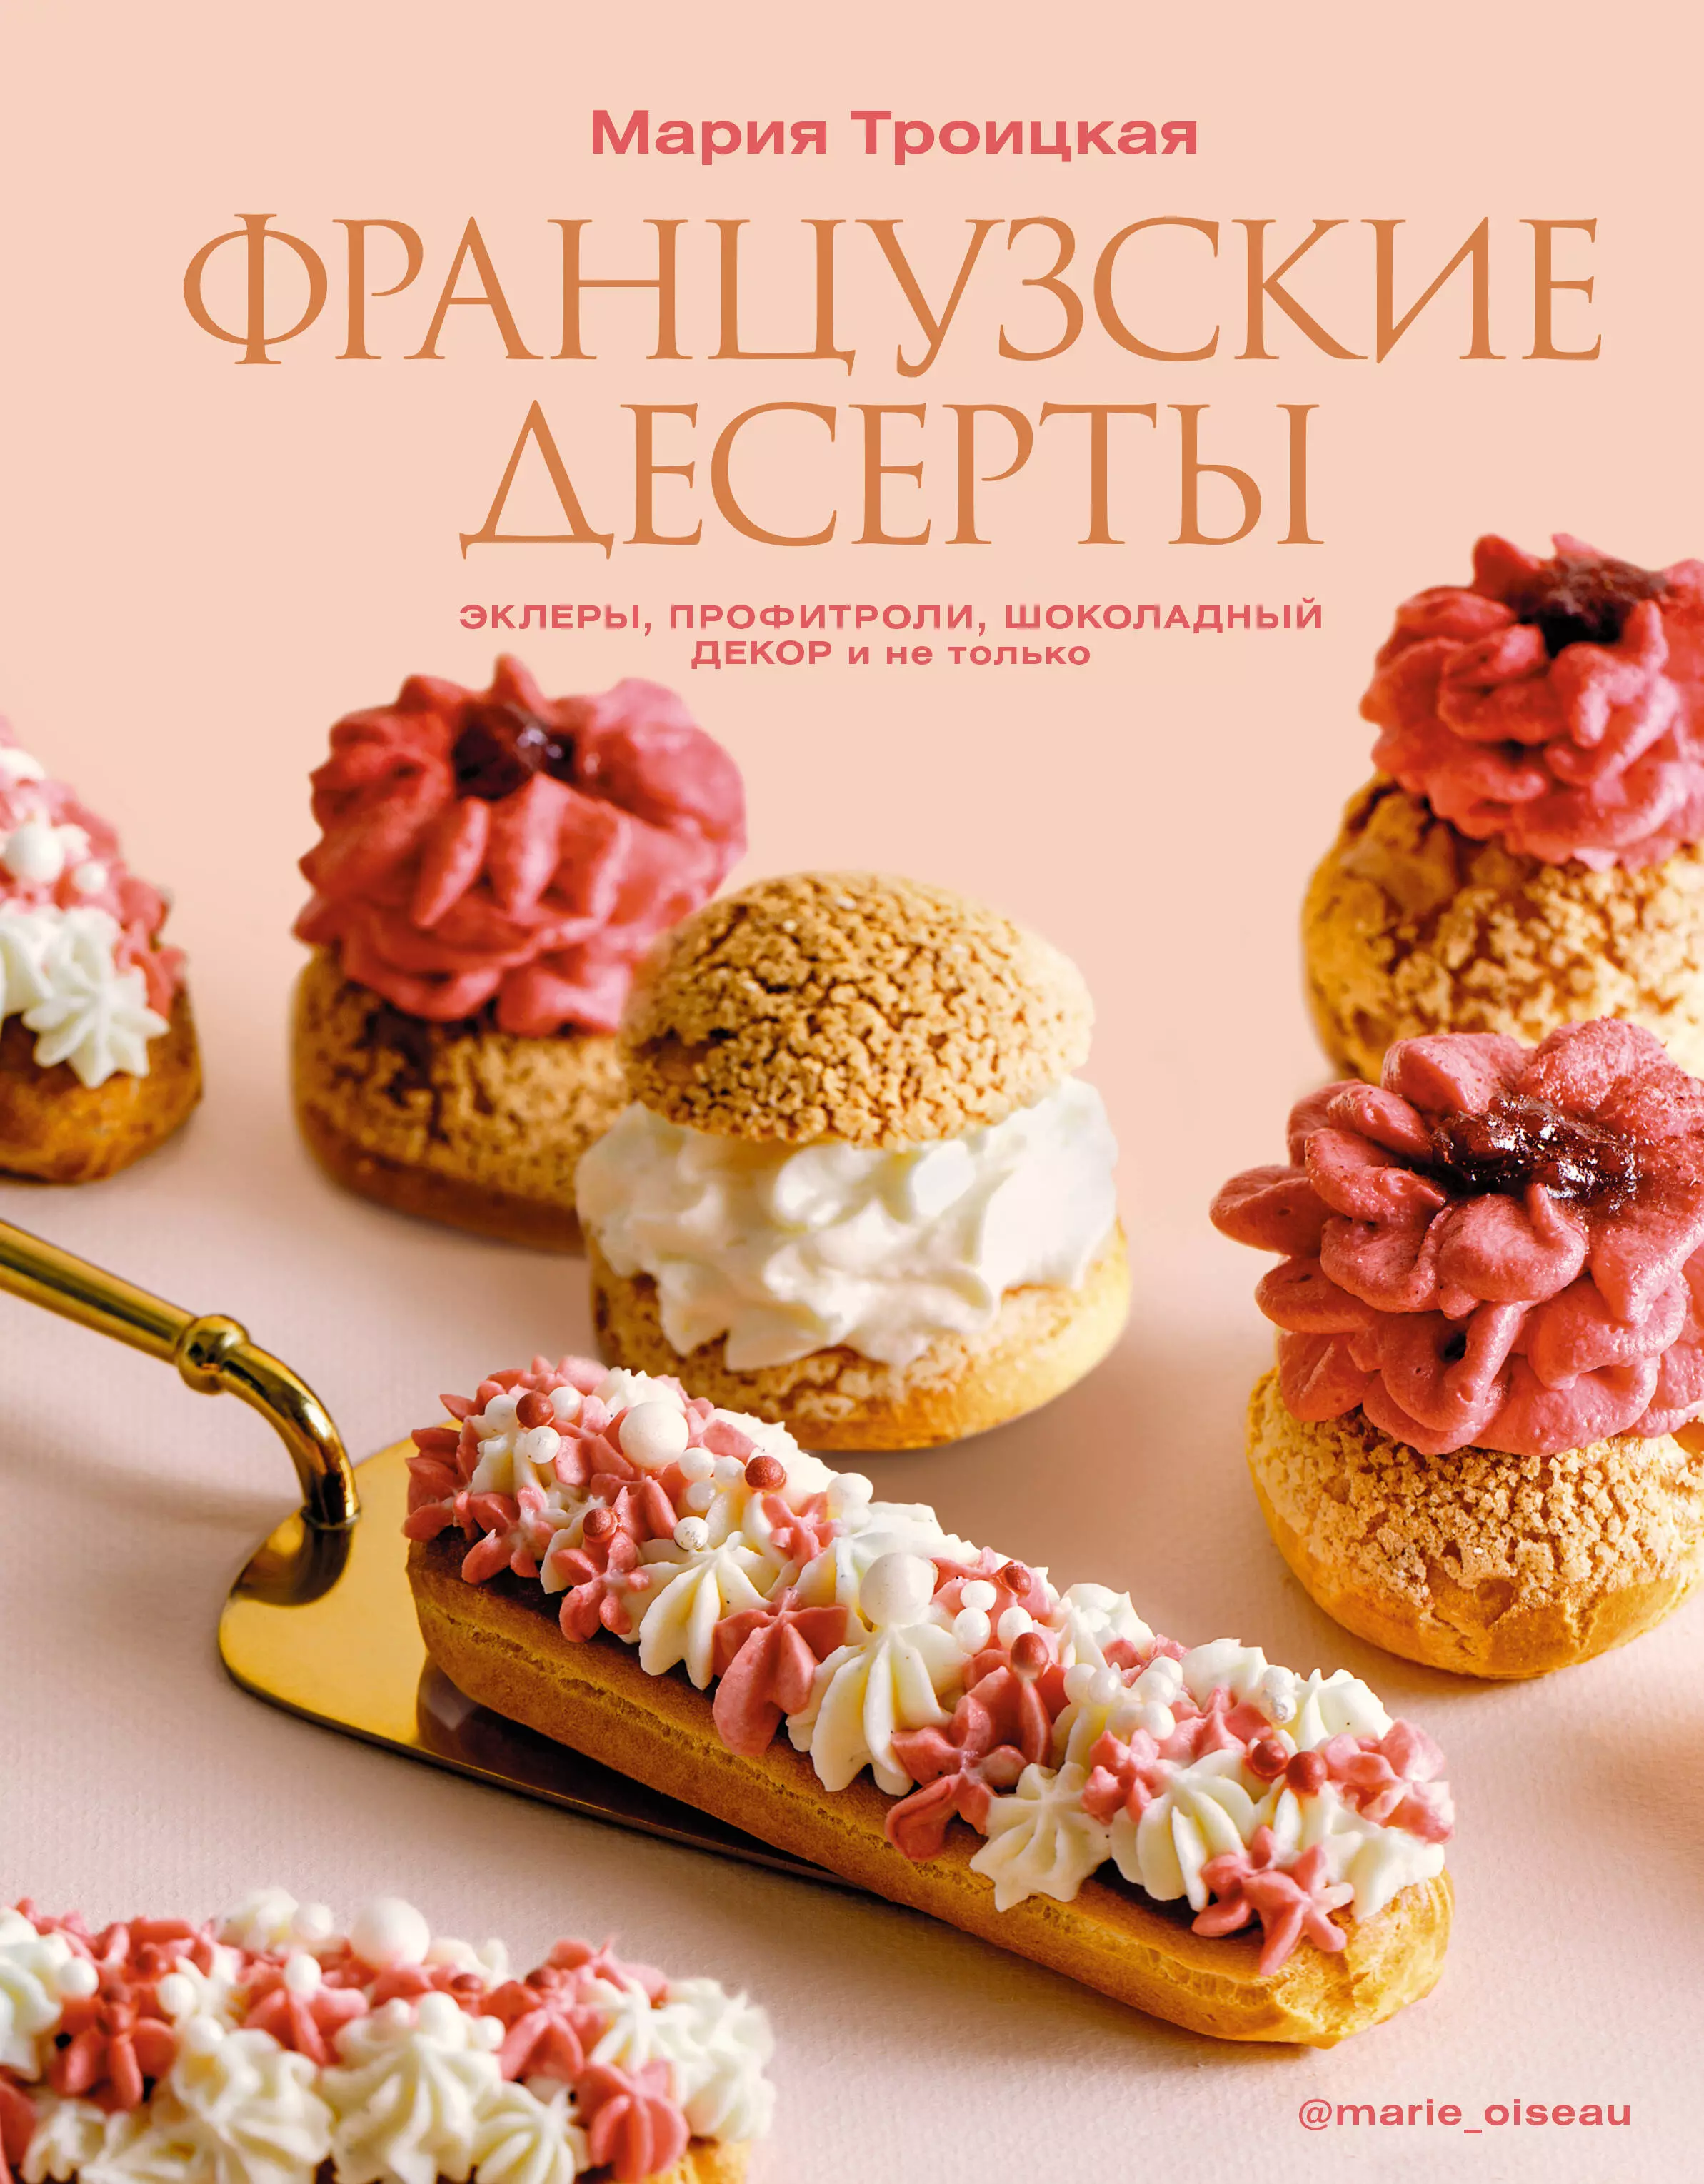 Троицкая Мария Ильинична Французские десерты: эклеры, профитроли, шоколадный декор и не только